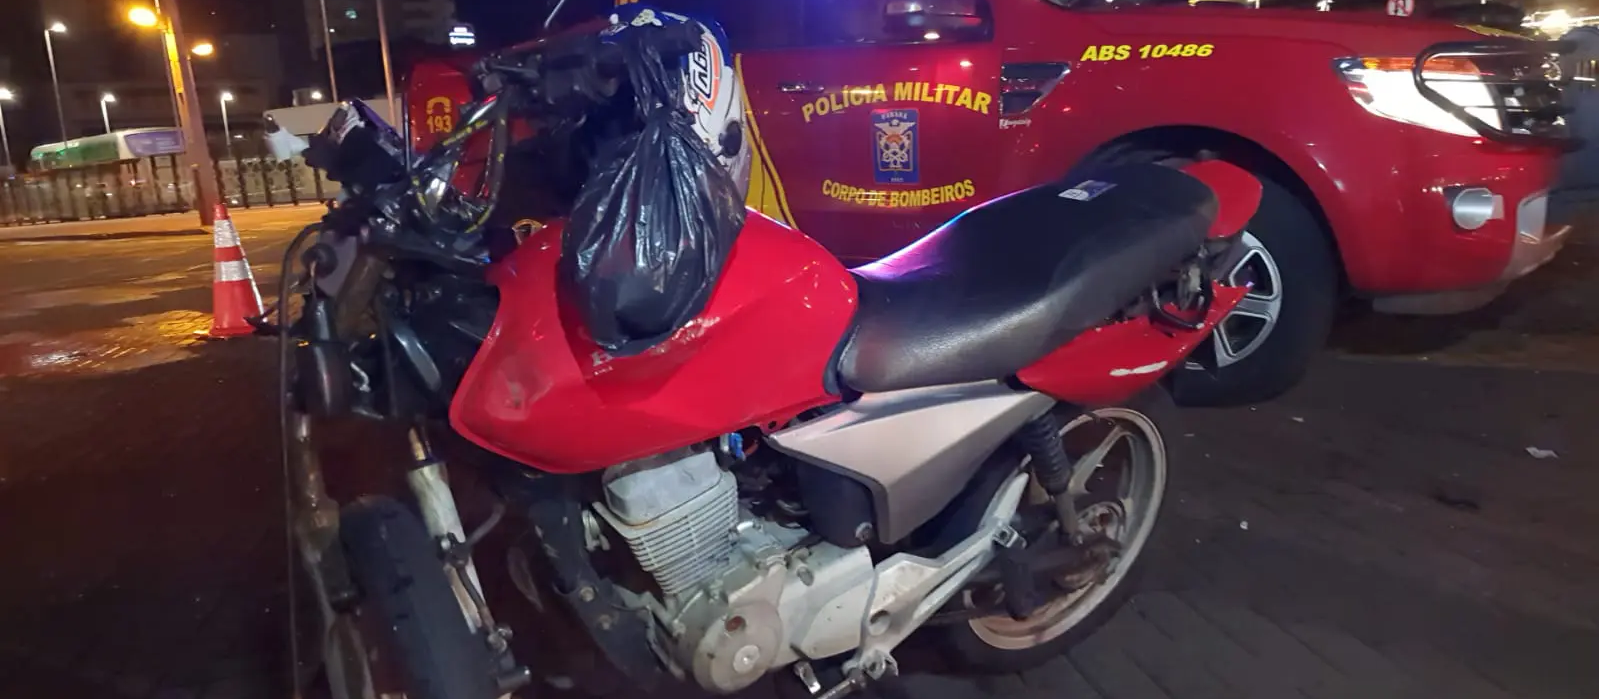 Motociclista tem traumatismo craniano em acidente na região central de Maringá